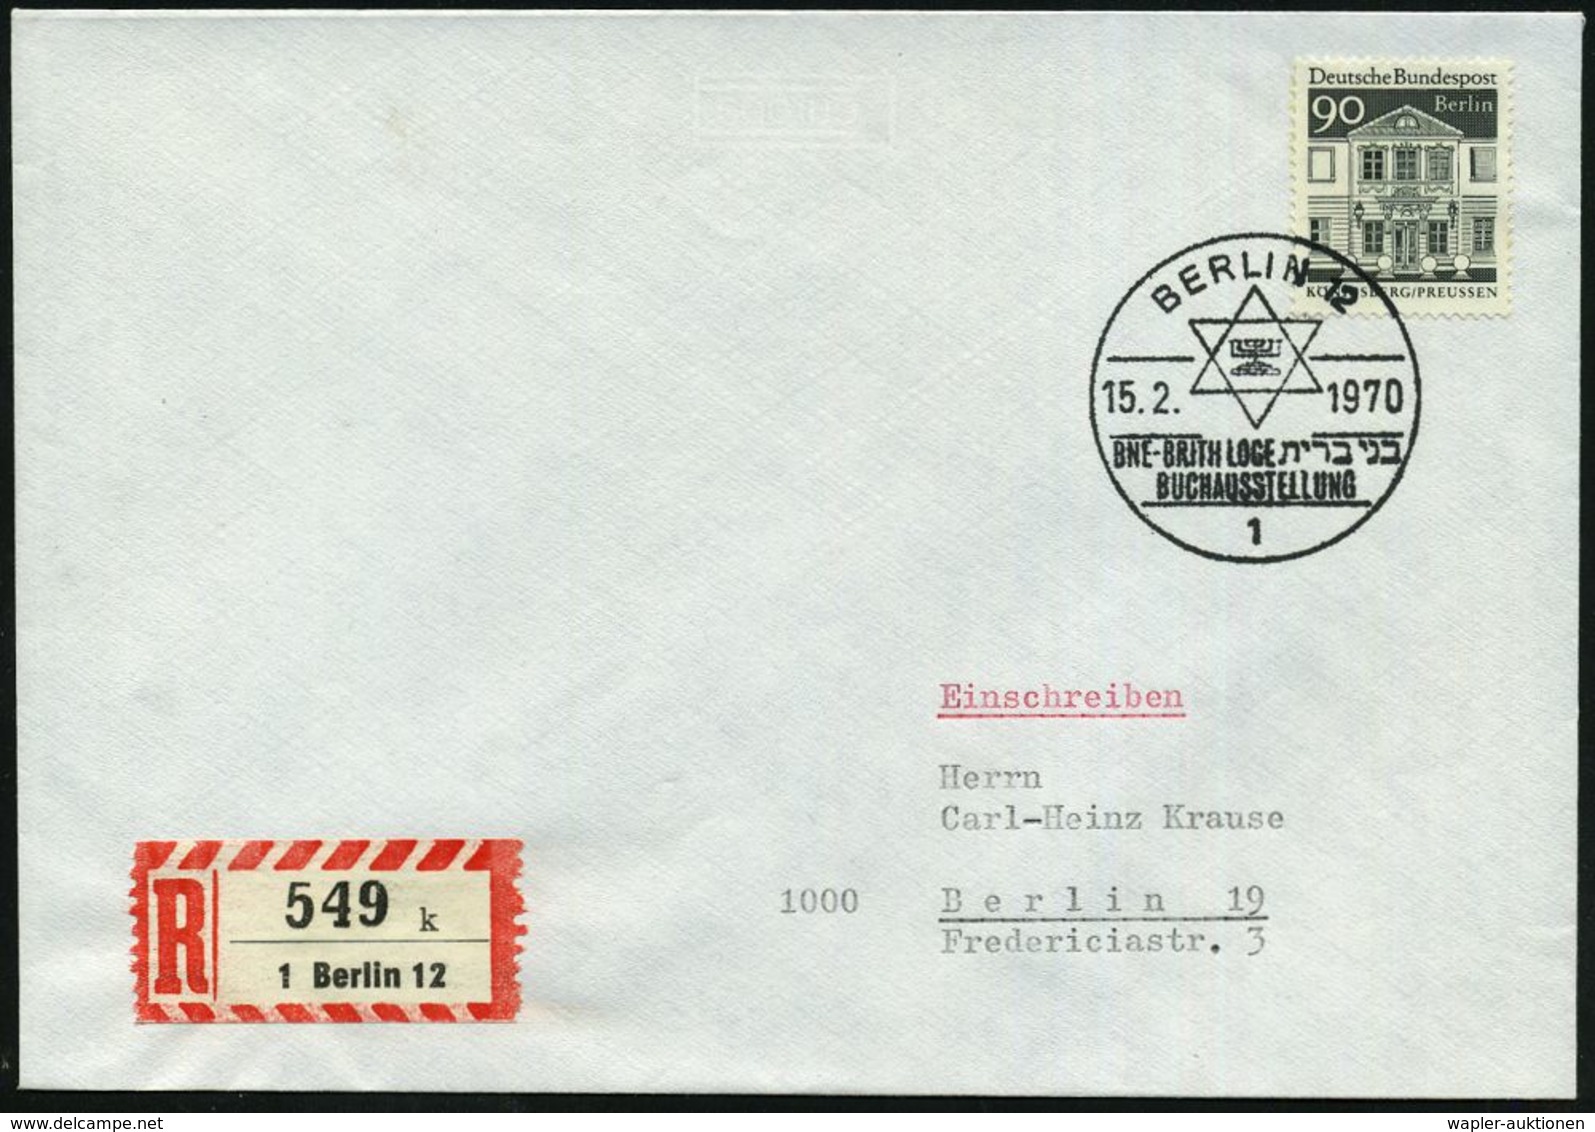 1 BERLIN 12/ BNE-BRITH LOGE/ BUCHAUSSTELLUNG 1970 (15.2.) SSt = Davidstern U. Hebräische Schrift + RZ: 1 Berlin 12/k , K - Jewish